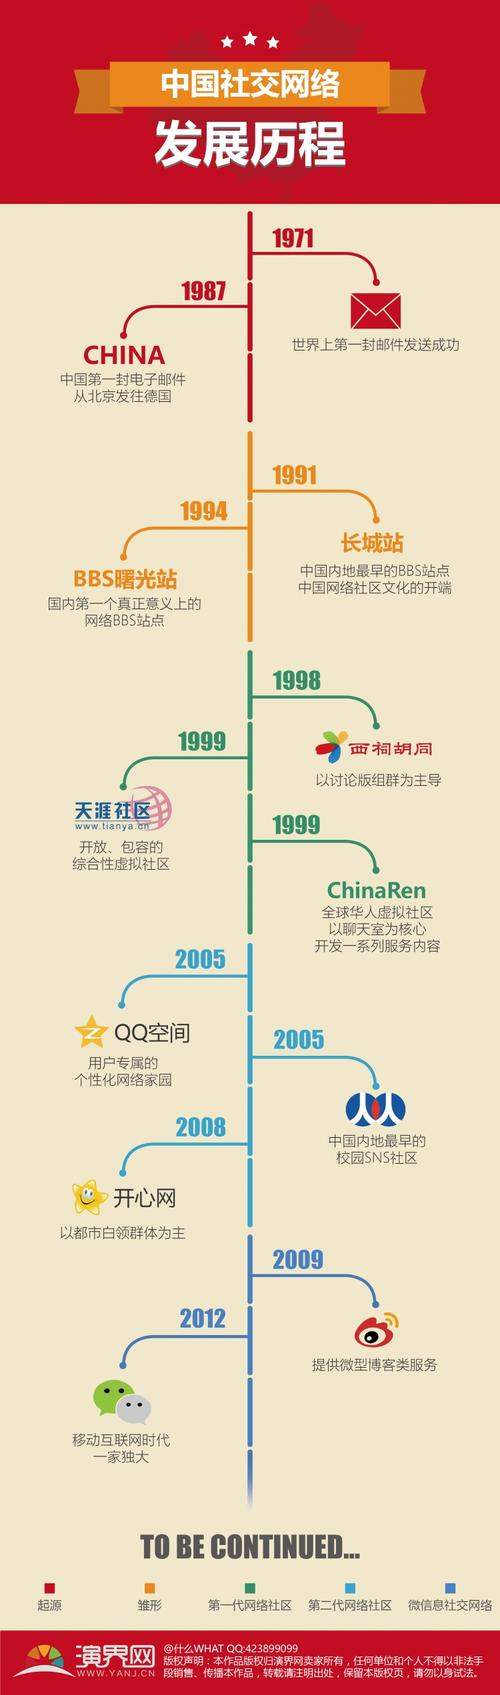 中国社交网络发展历程